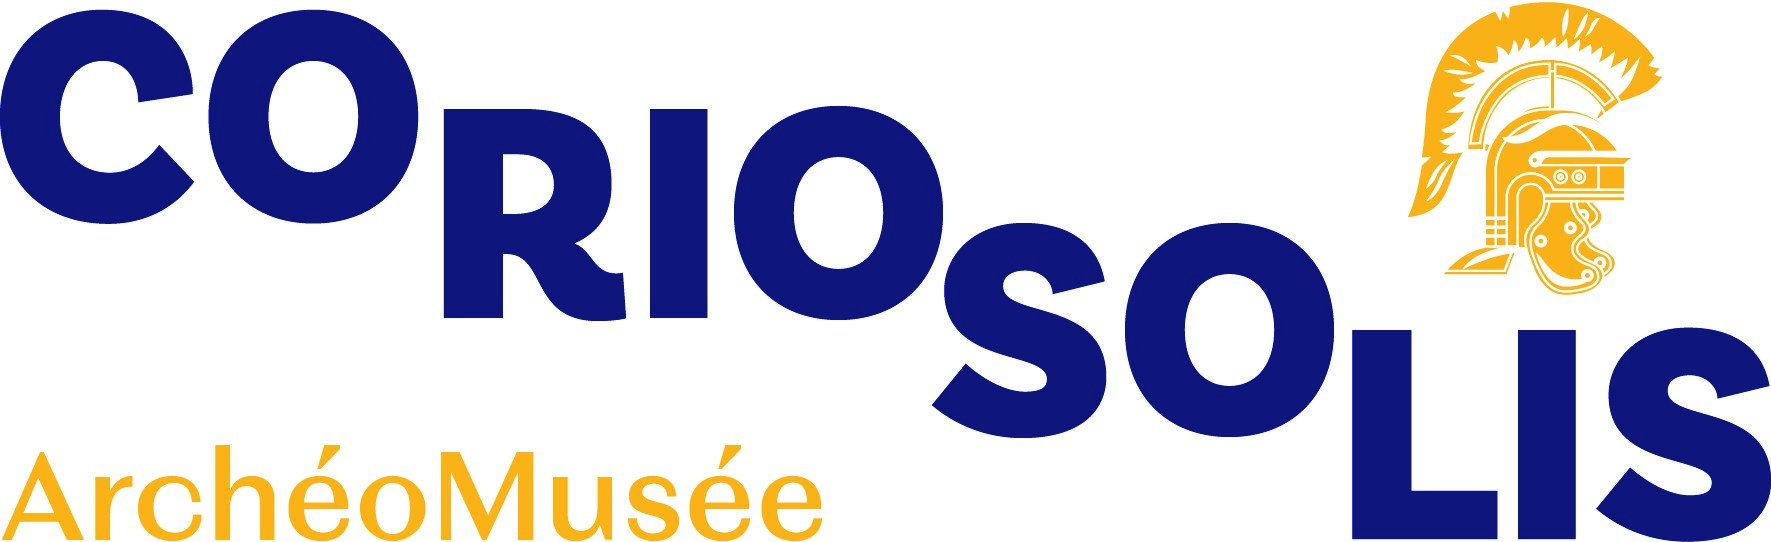 Logo Coriosolis 2023 test 4 vsyllabes horizontale